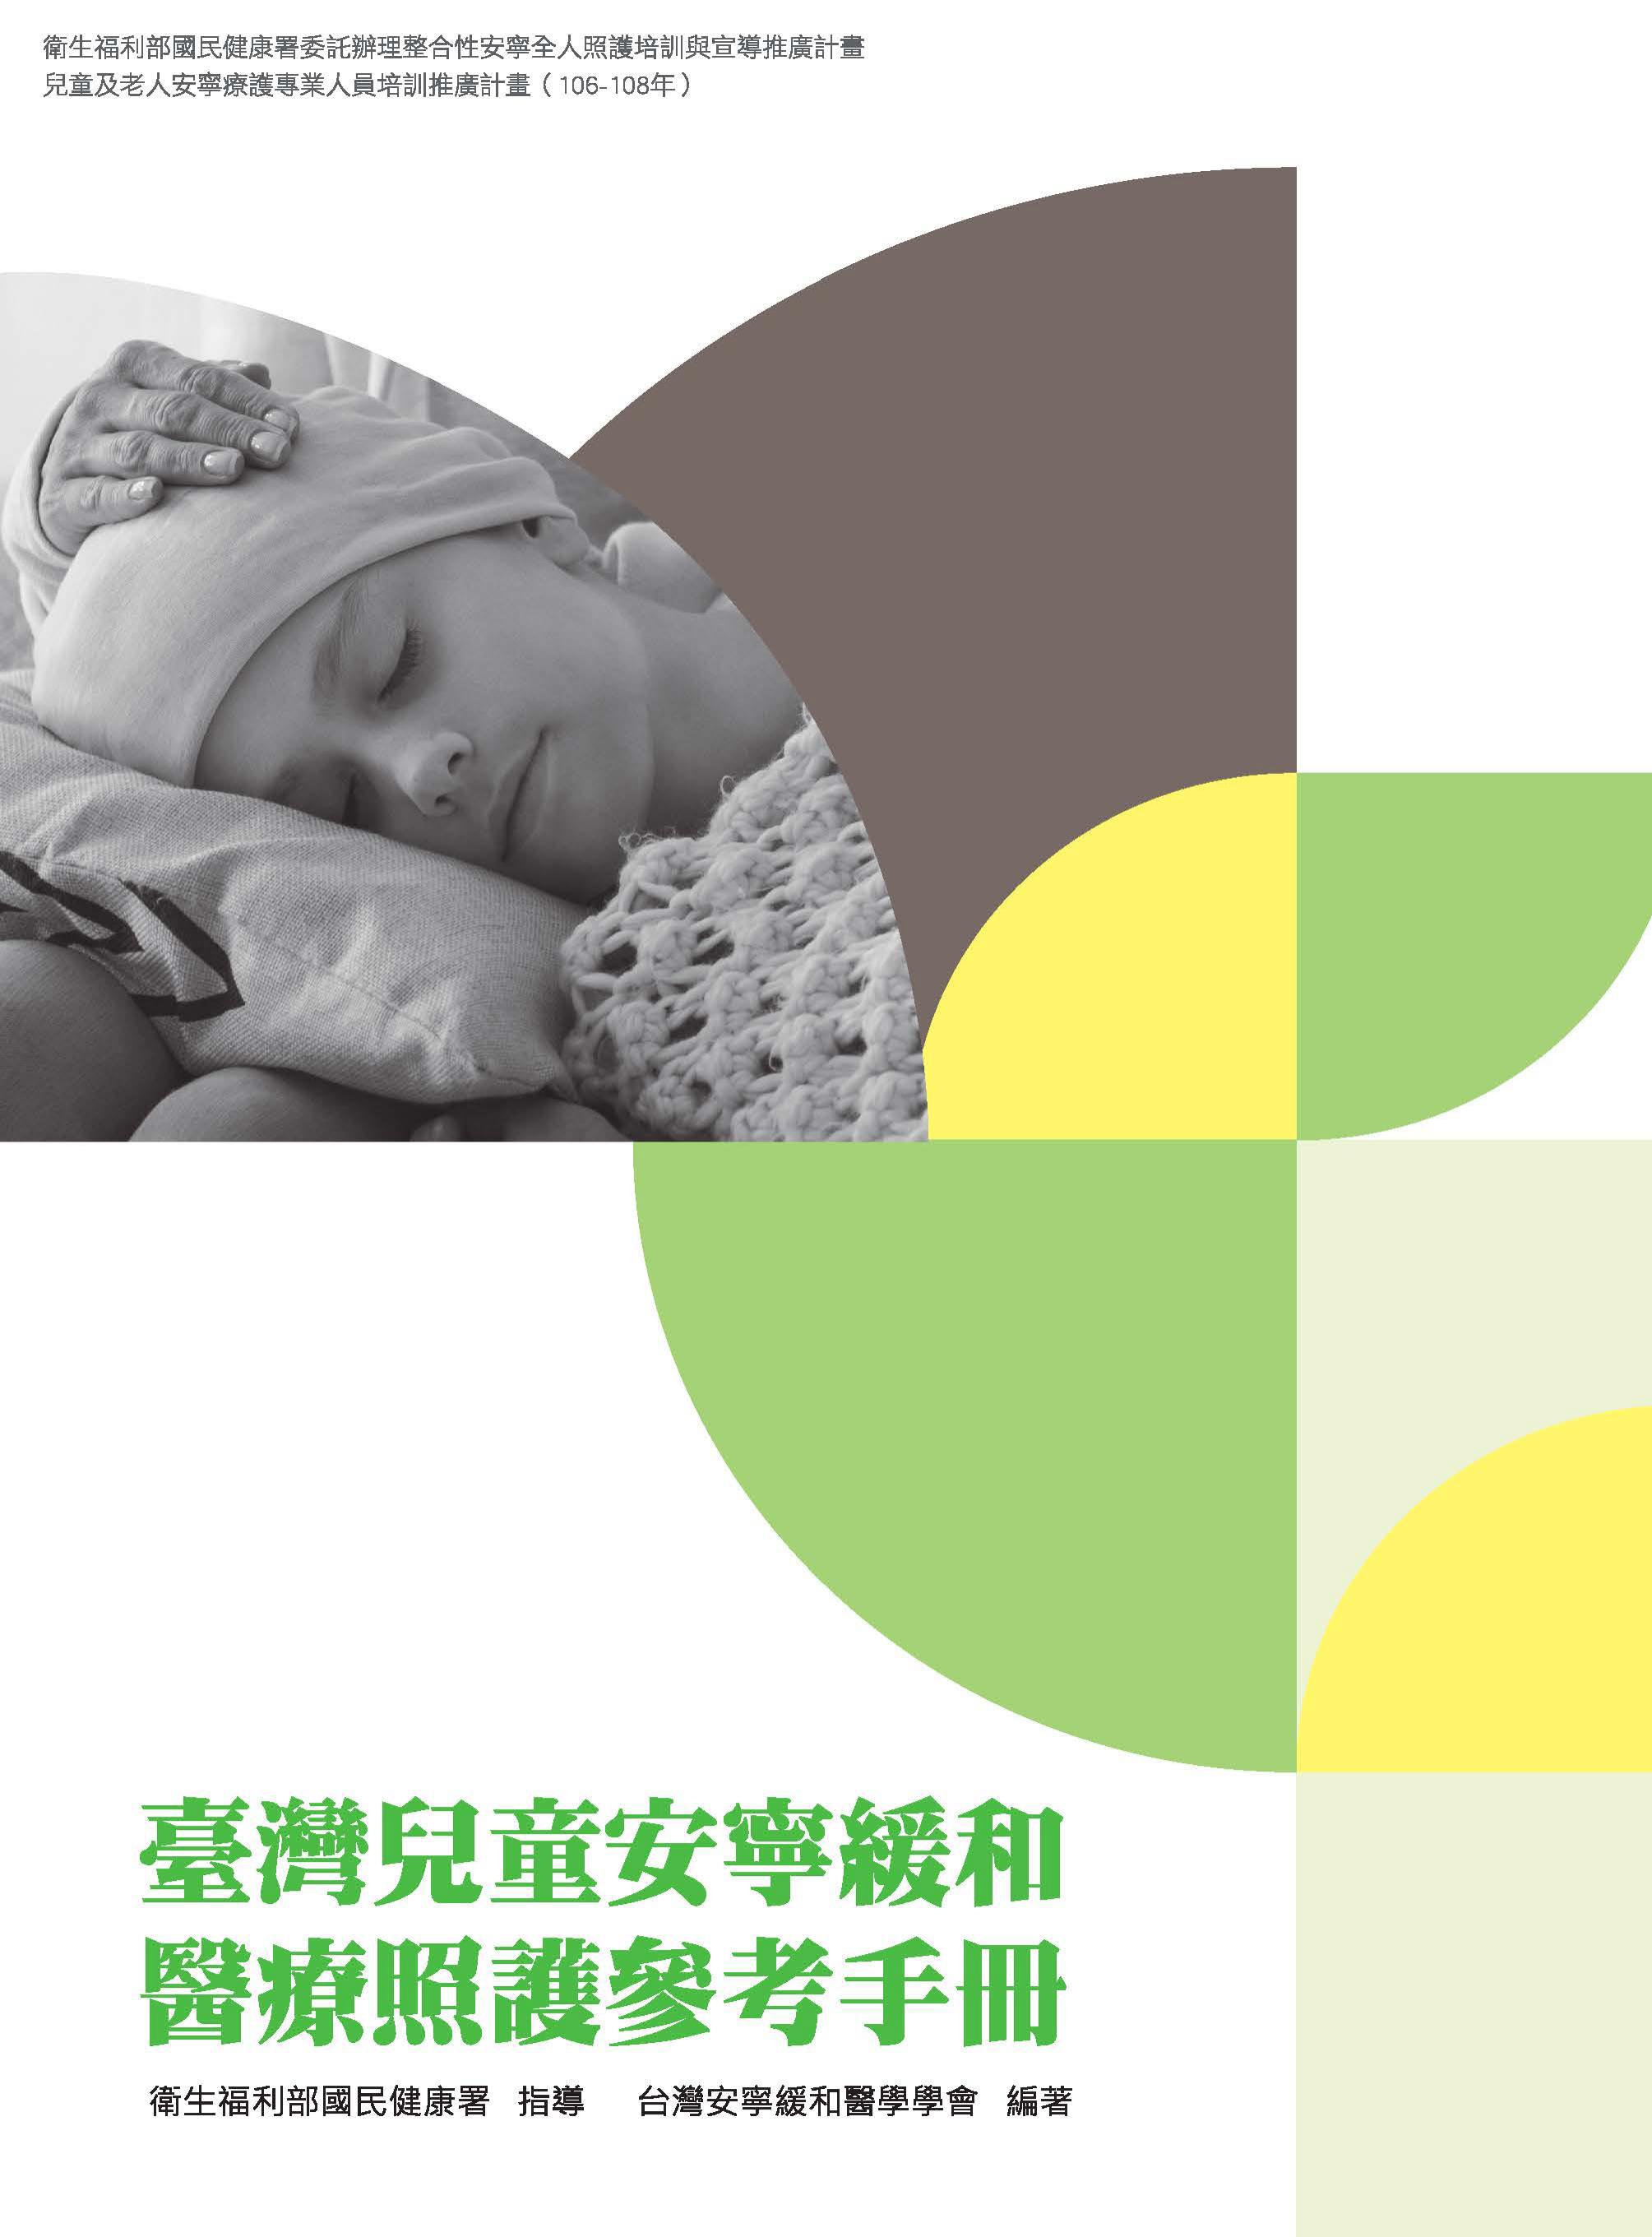 臺灣兒童安寧緩和醫療照護參考手冊文章照片